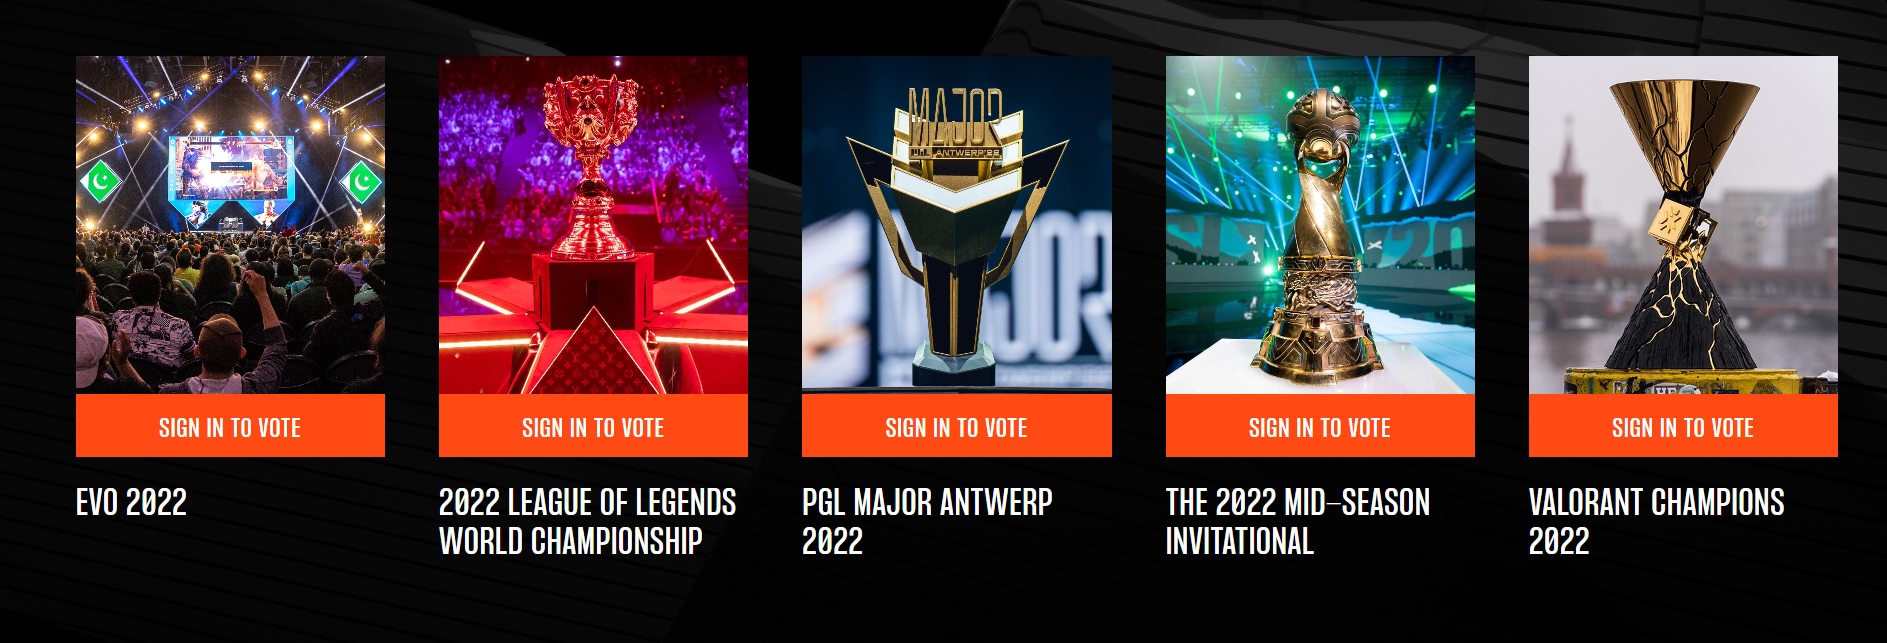 The Game Awards 2022: fecha, lugar, novedades y dónde votar por los  nominados al premio Revtli Tdex, RESPUESTAS